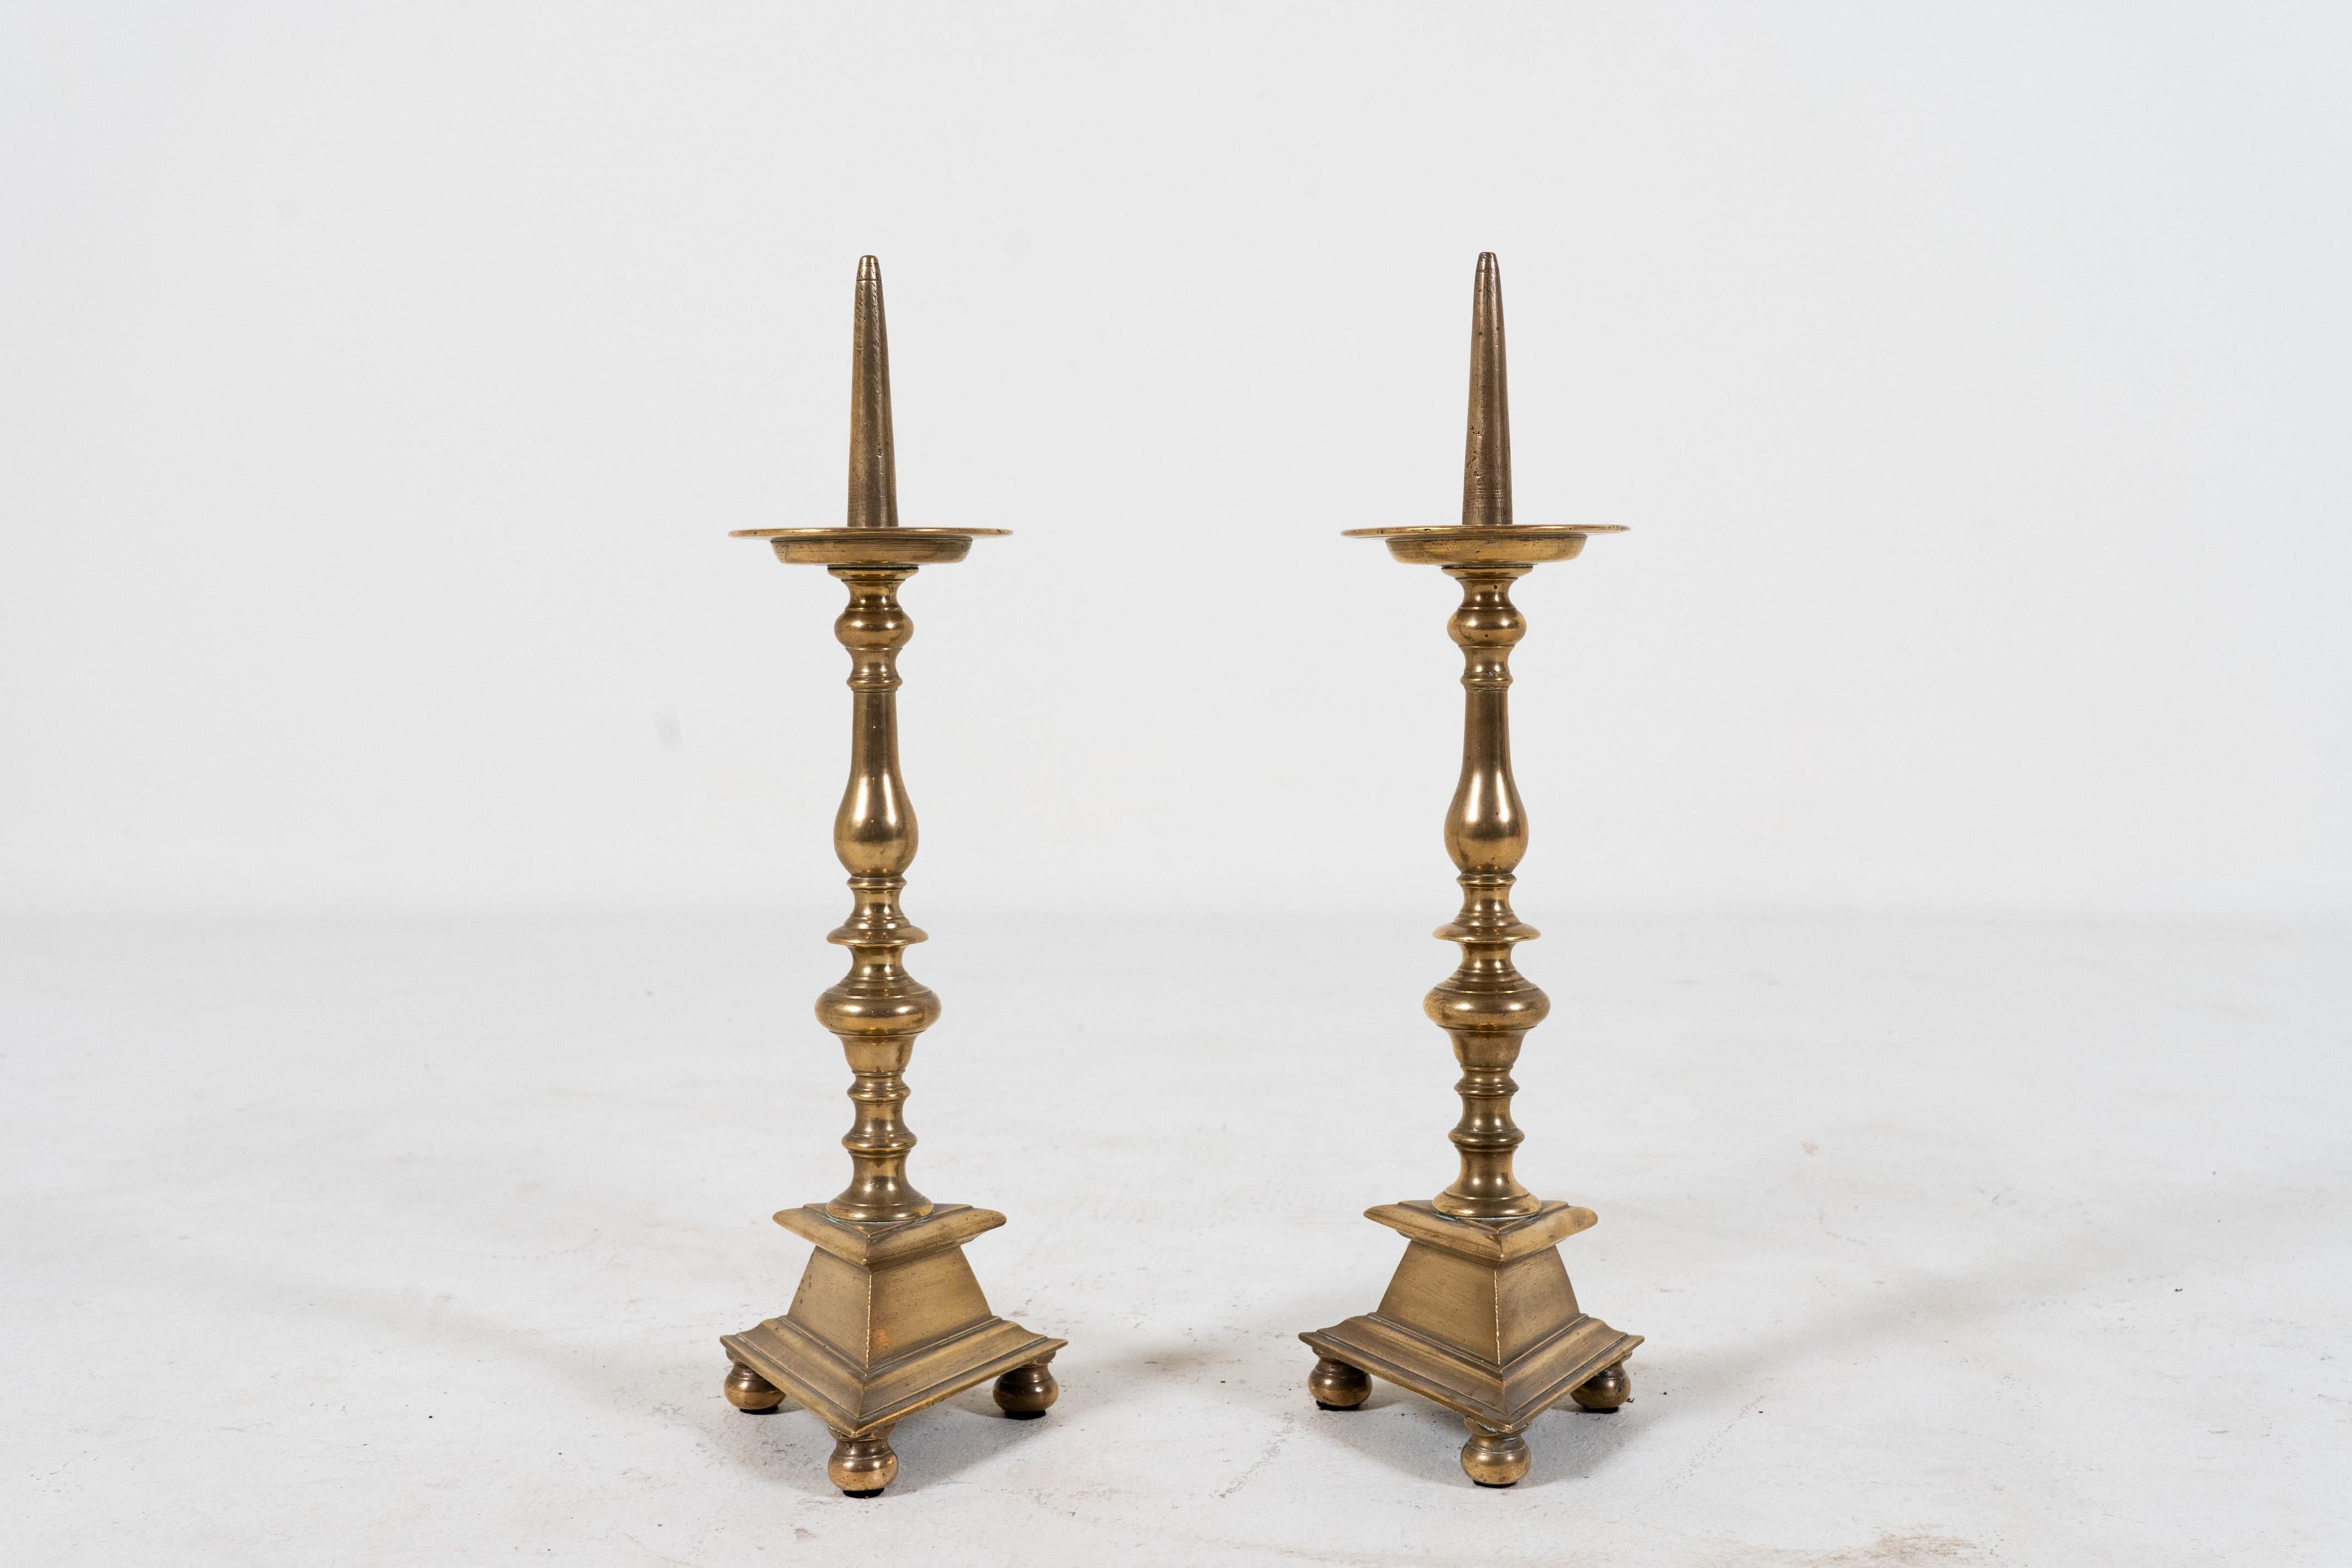 Diese großen und eleganten Kerzenhalter aus massivem Messing wurden in Avignon, Frankreich, gefunden und haben stilvolle dreieckige Sockel. Die ehemals polierte Oberfläche ist mit der Zeit und dem Gebrauch leicht abgestumpft. Der Kerzenbecher kann